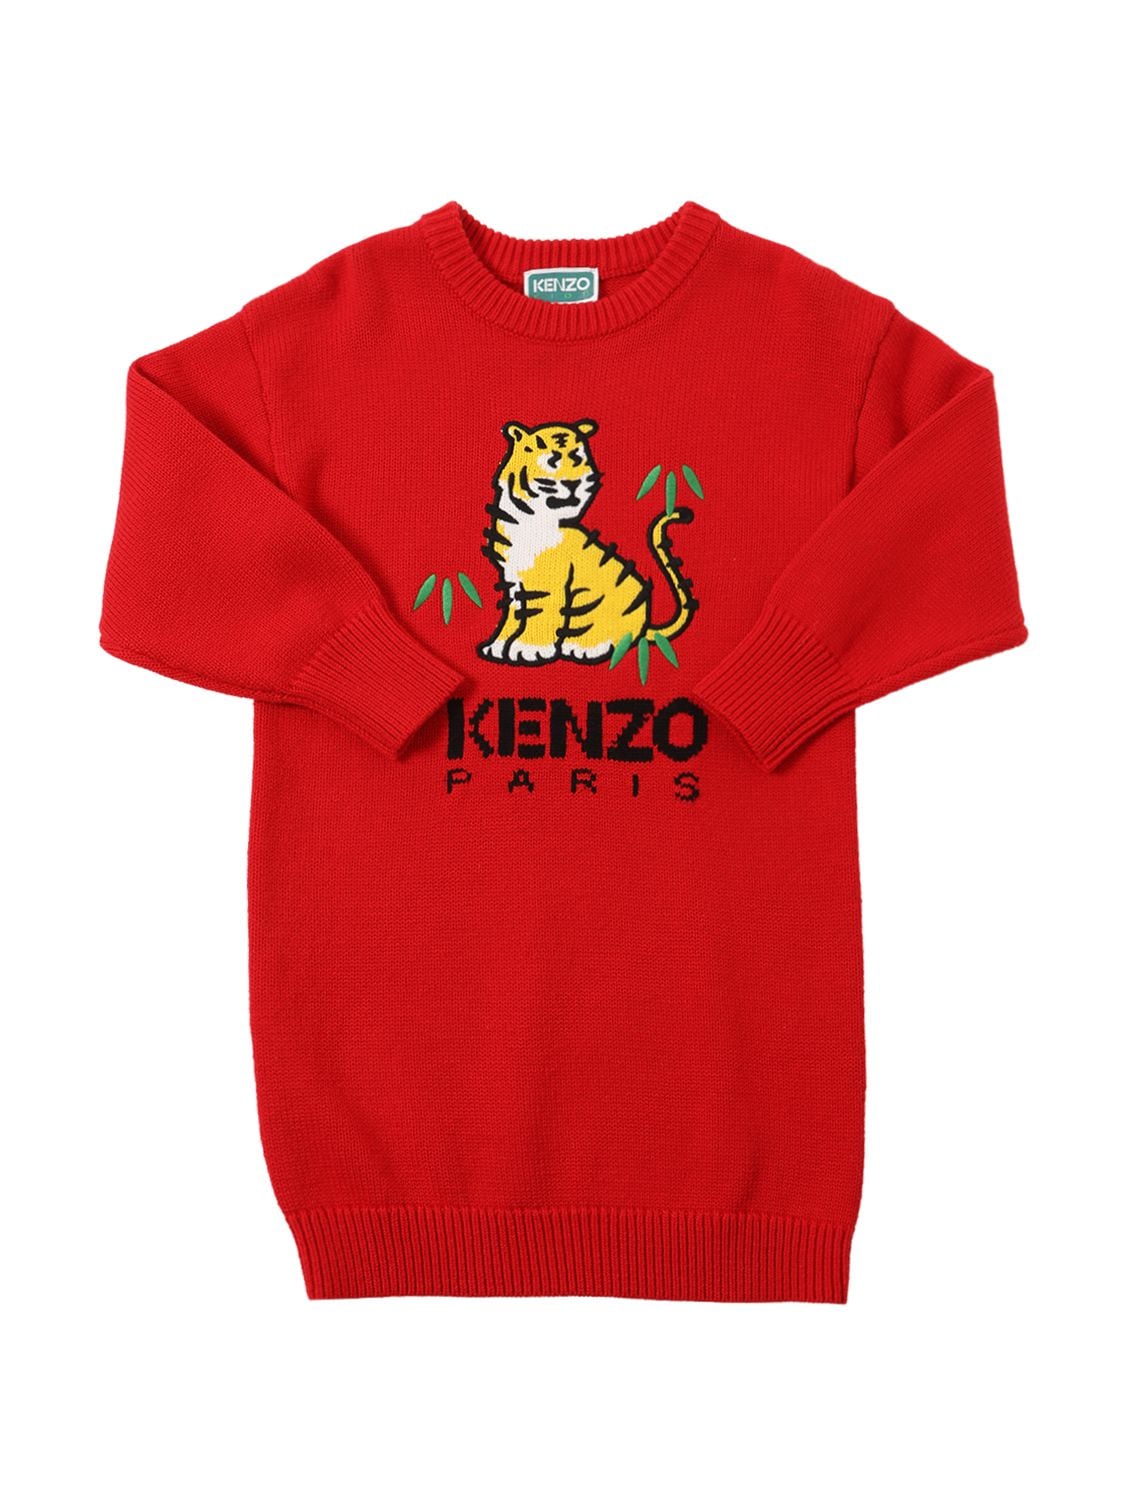 Kenzo Kids' Cotton & Wool Knit Dress W/logo In Red